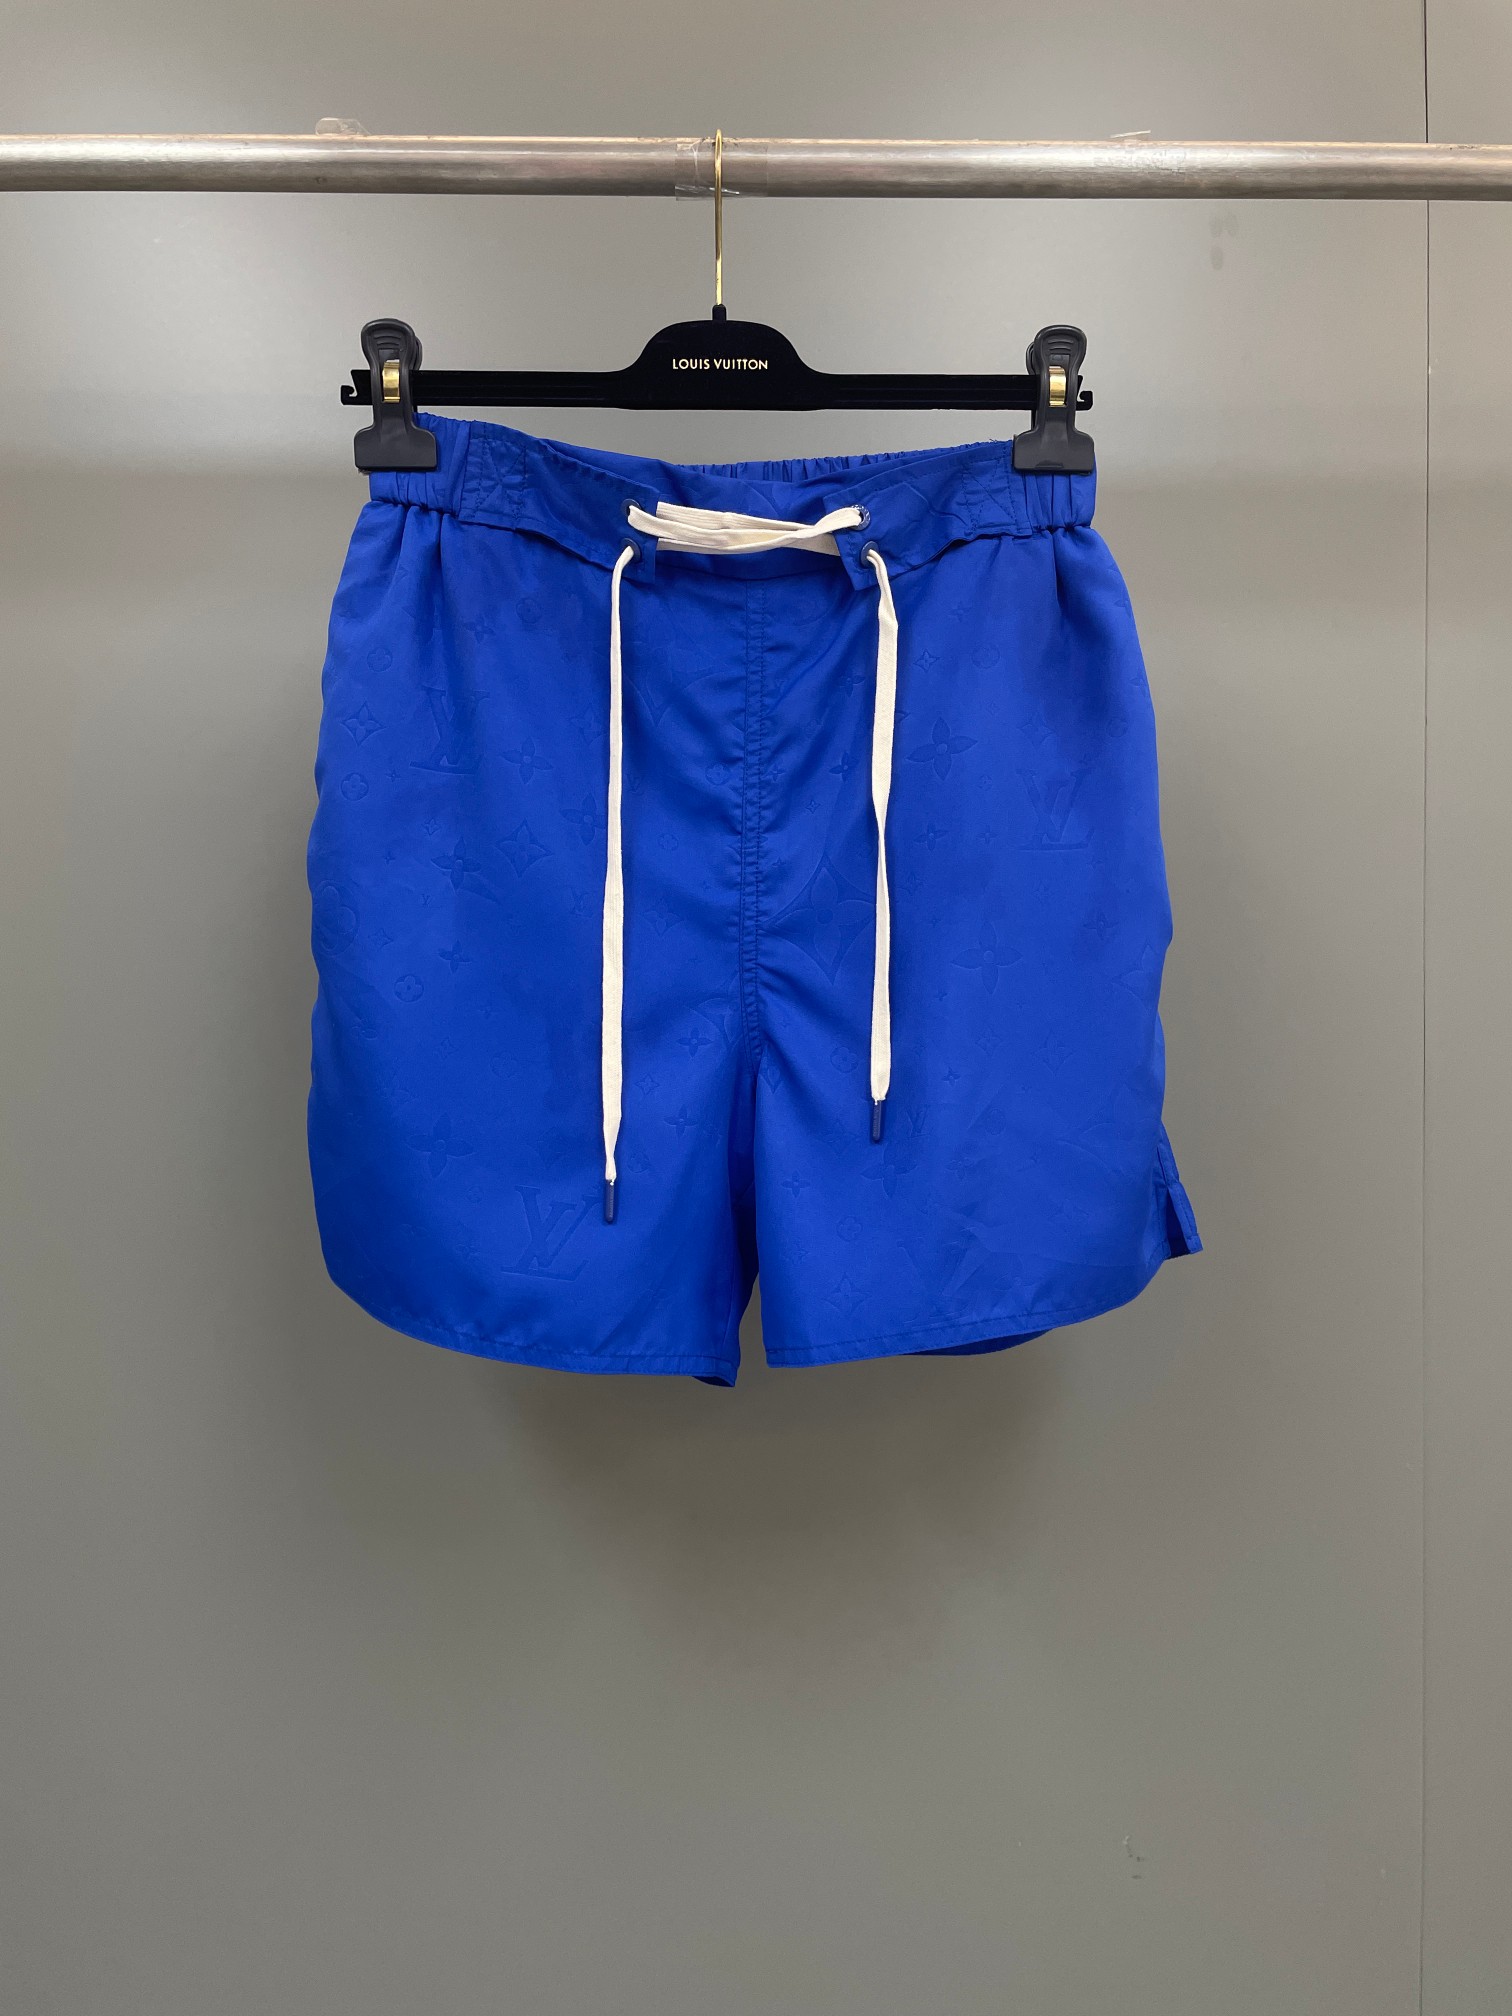 לואי ויטון בגדים מכנסיים קצרים לבן פוליסטר אוסף האביב/הקיץ חוף